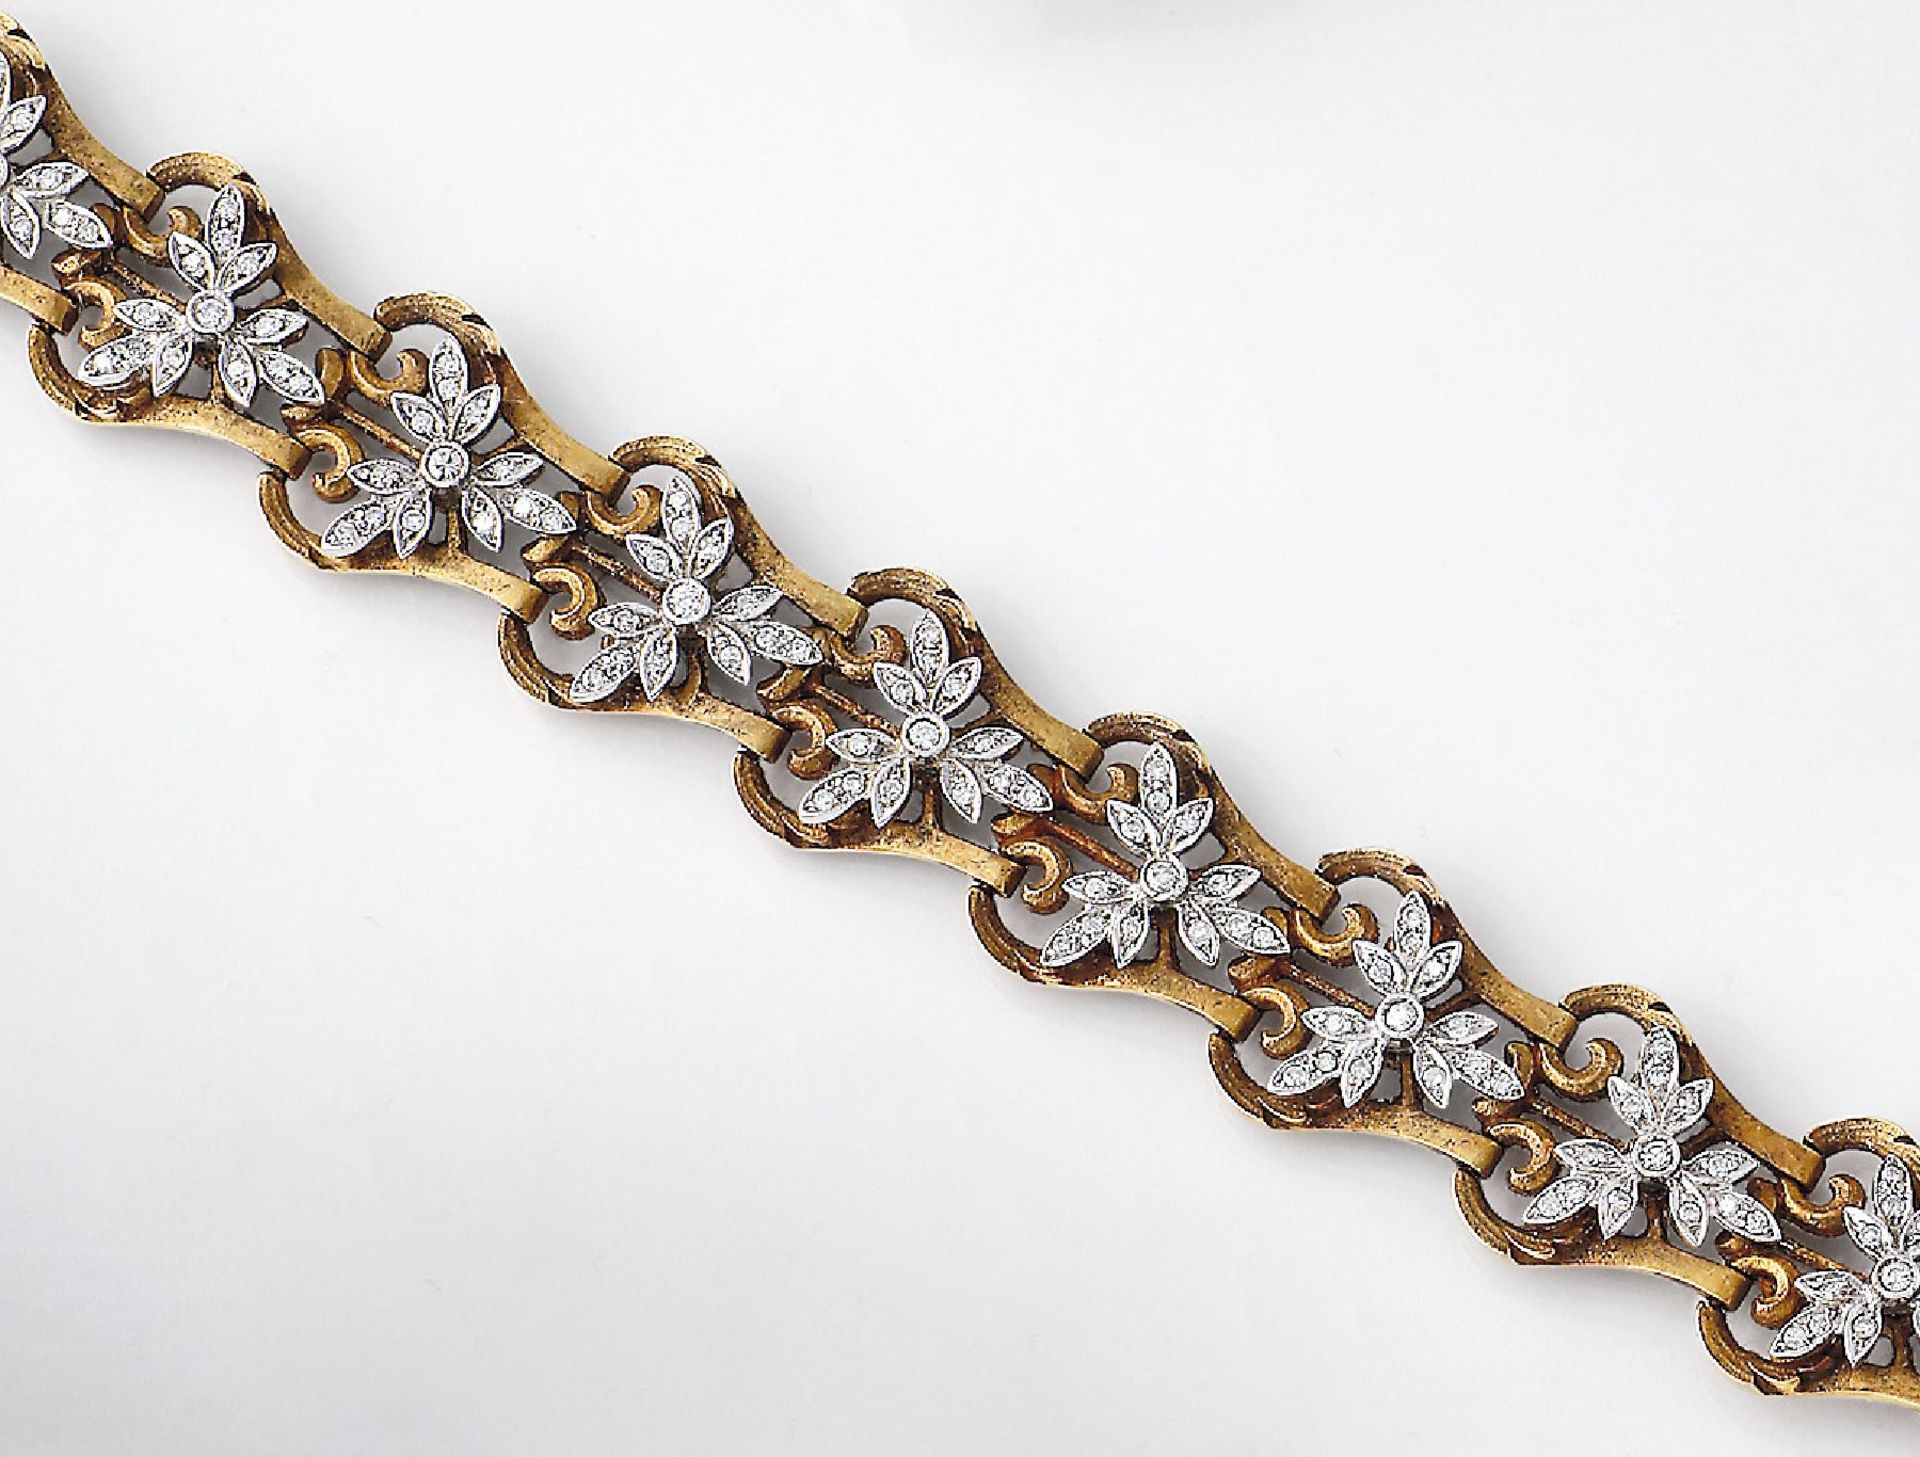 18 kt Gold Armband mit Diamanten, um 1870, GG/WG 750/000, aufgelegte Blüten in WG mit Diamanten zus.